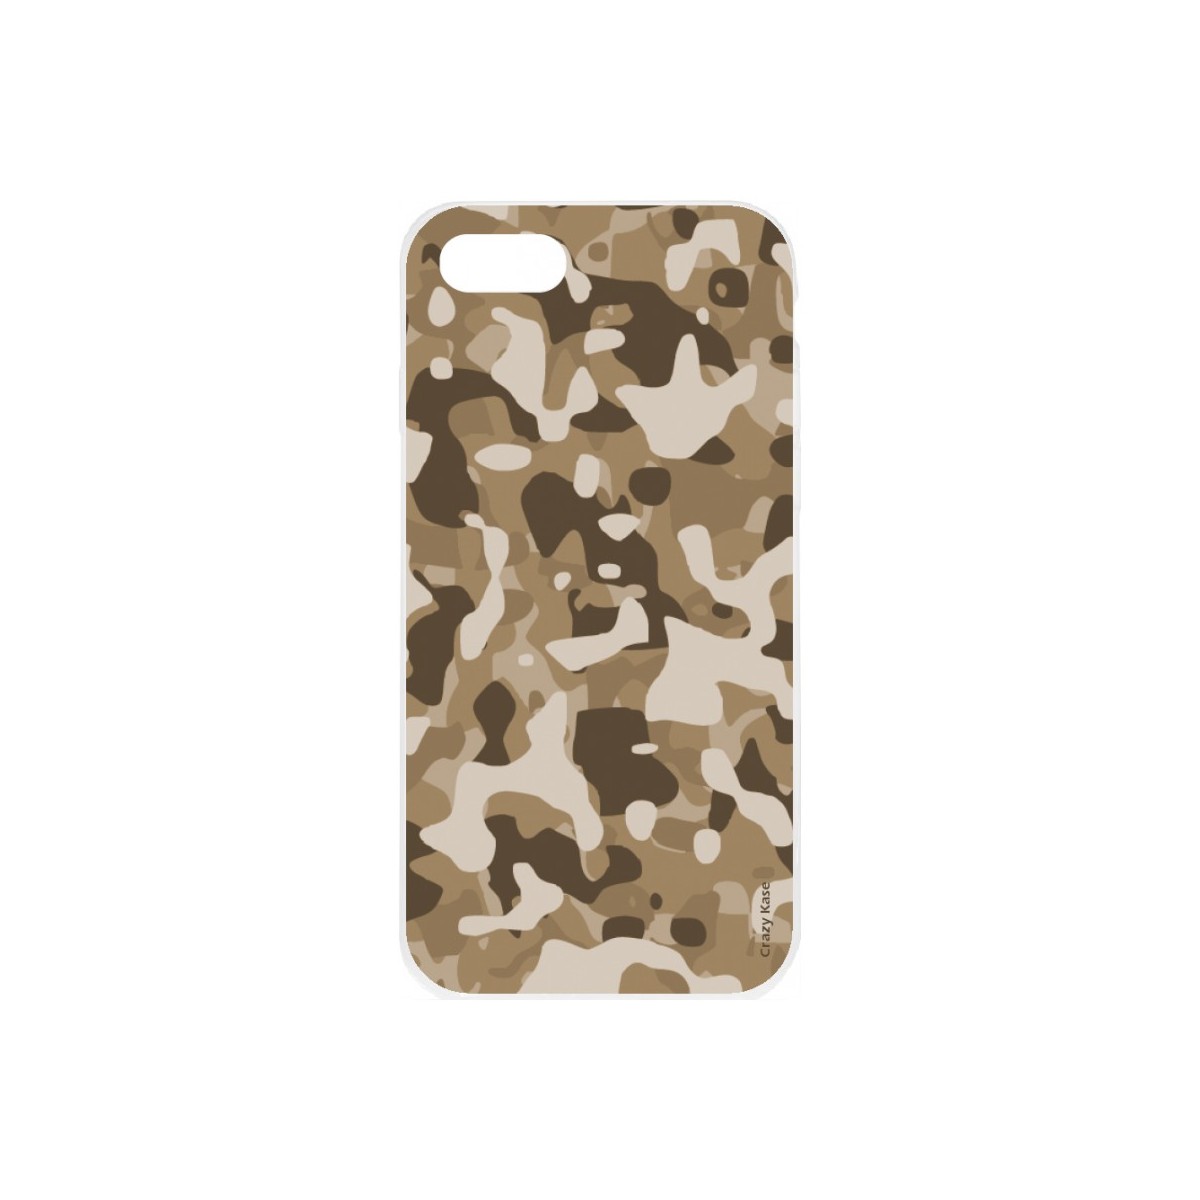 Coque iPhone 8 souple Camouflage militaire désert Crazy Kase